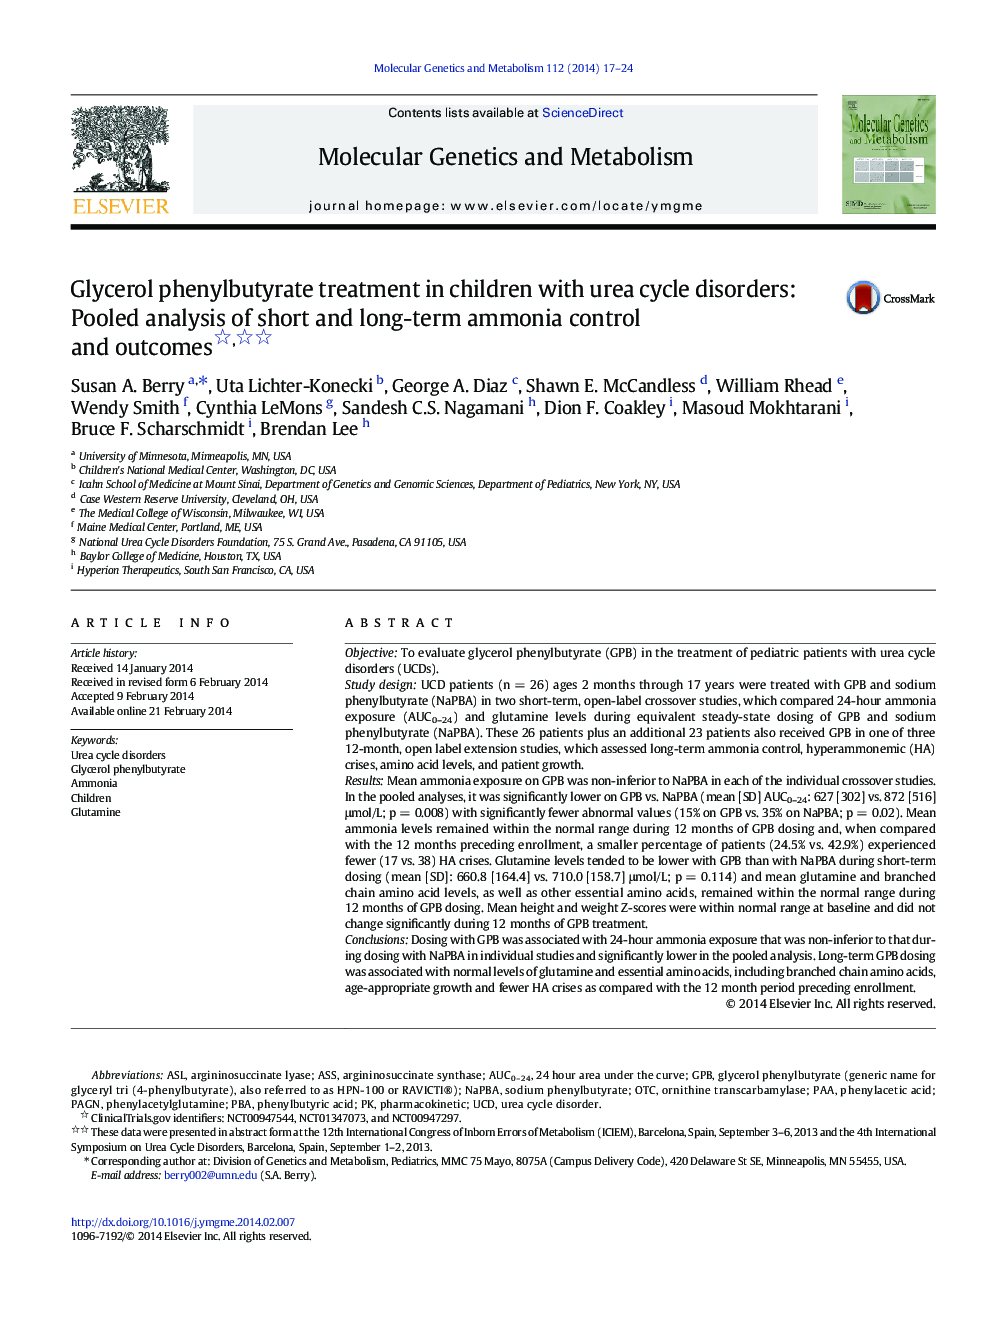 درمان گلیسرول فنیل بوتیرات در کودکان مبتلا به اختلالات چرکی اوره: تجزیه و تحلیل دو طرفه کنترل و نتایج آمونیاک کوتاه و بلند مدت 